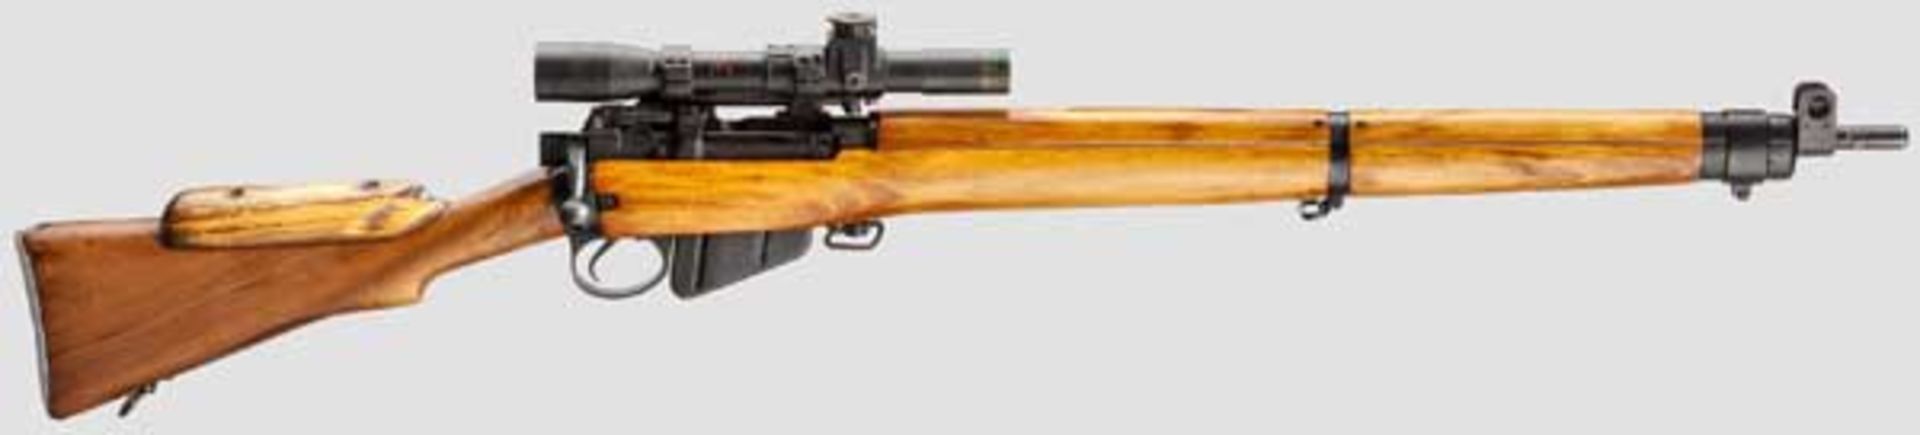 Scharfschützengewehr Lee-Enfield Rifle C No. 4 Mk I (T), Nr. V37952 Kal. .303 brit., Nr. V37952.